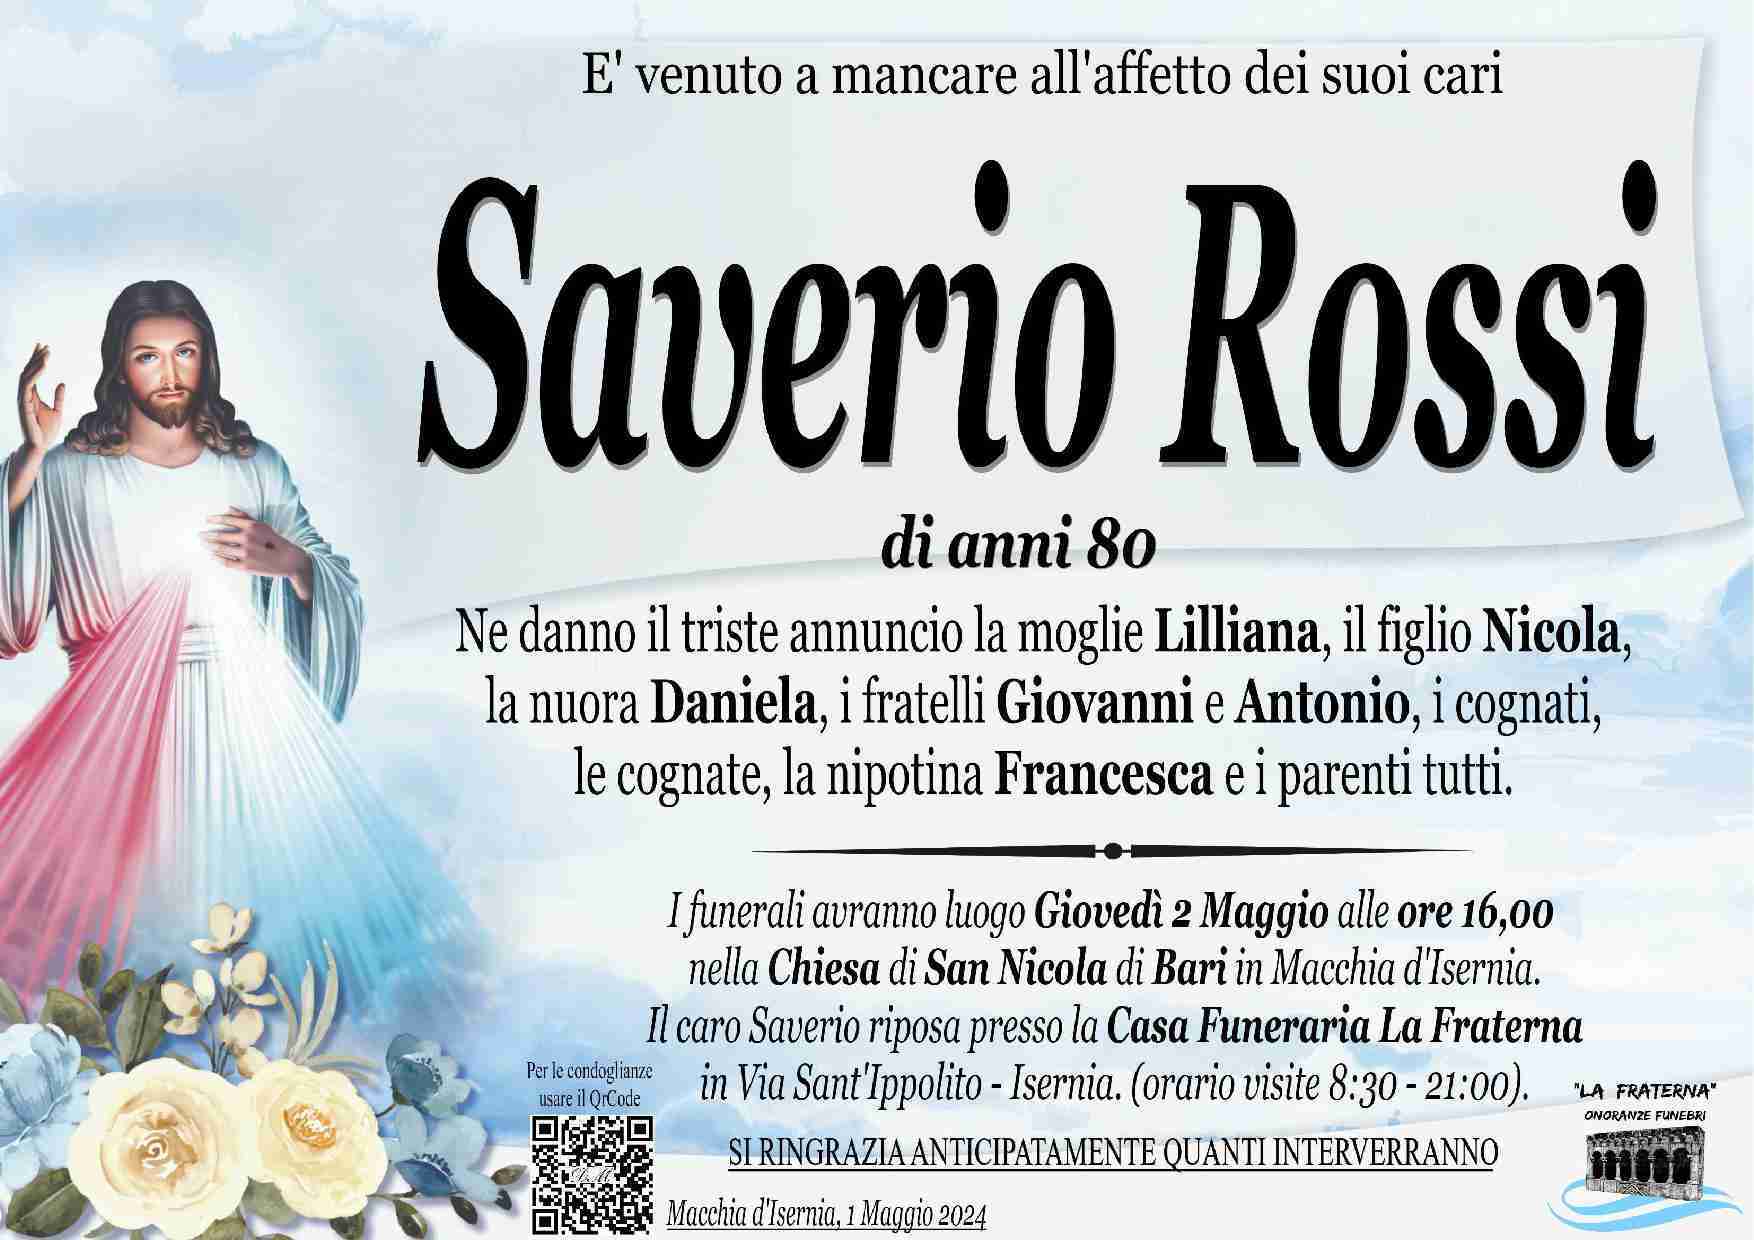 Saverio Rossi